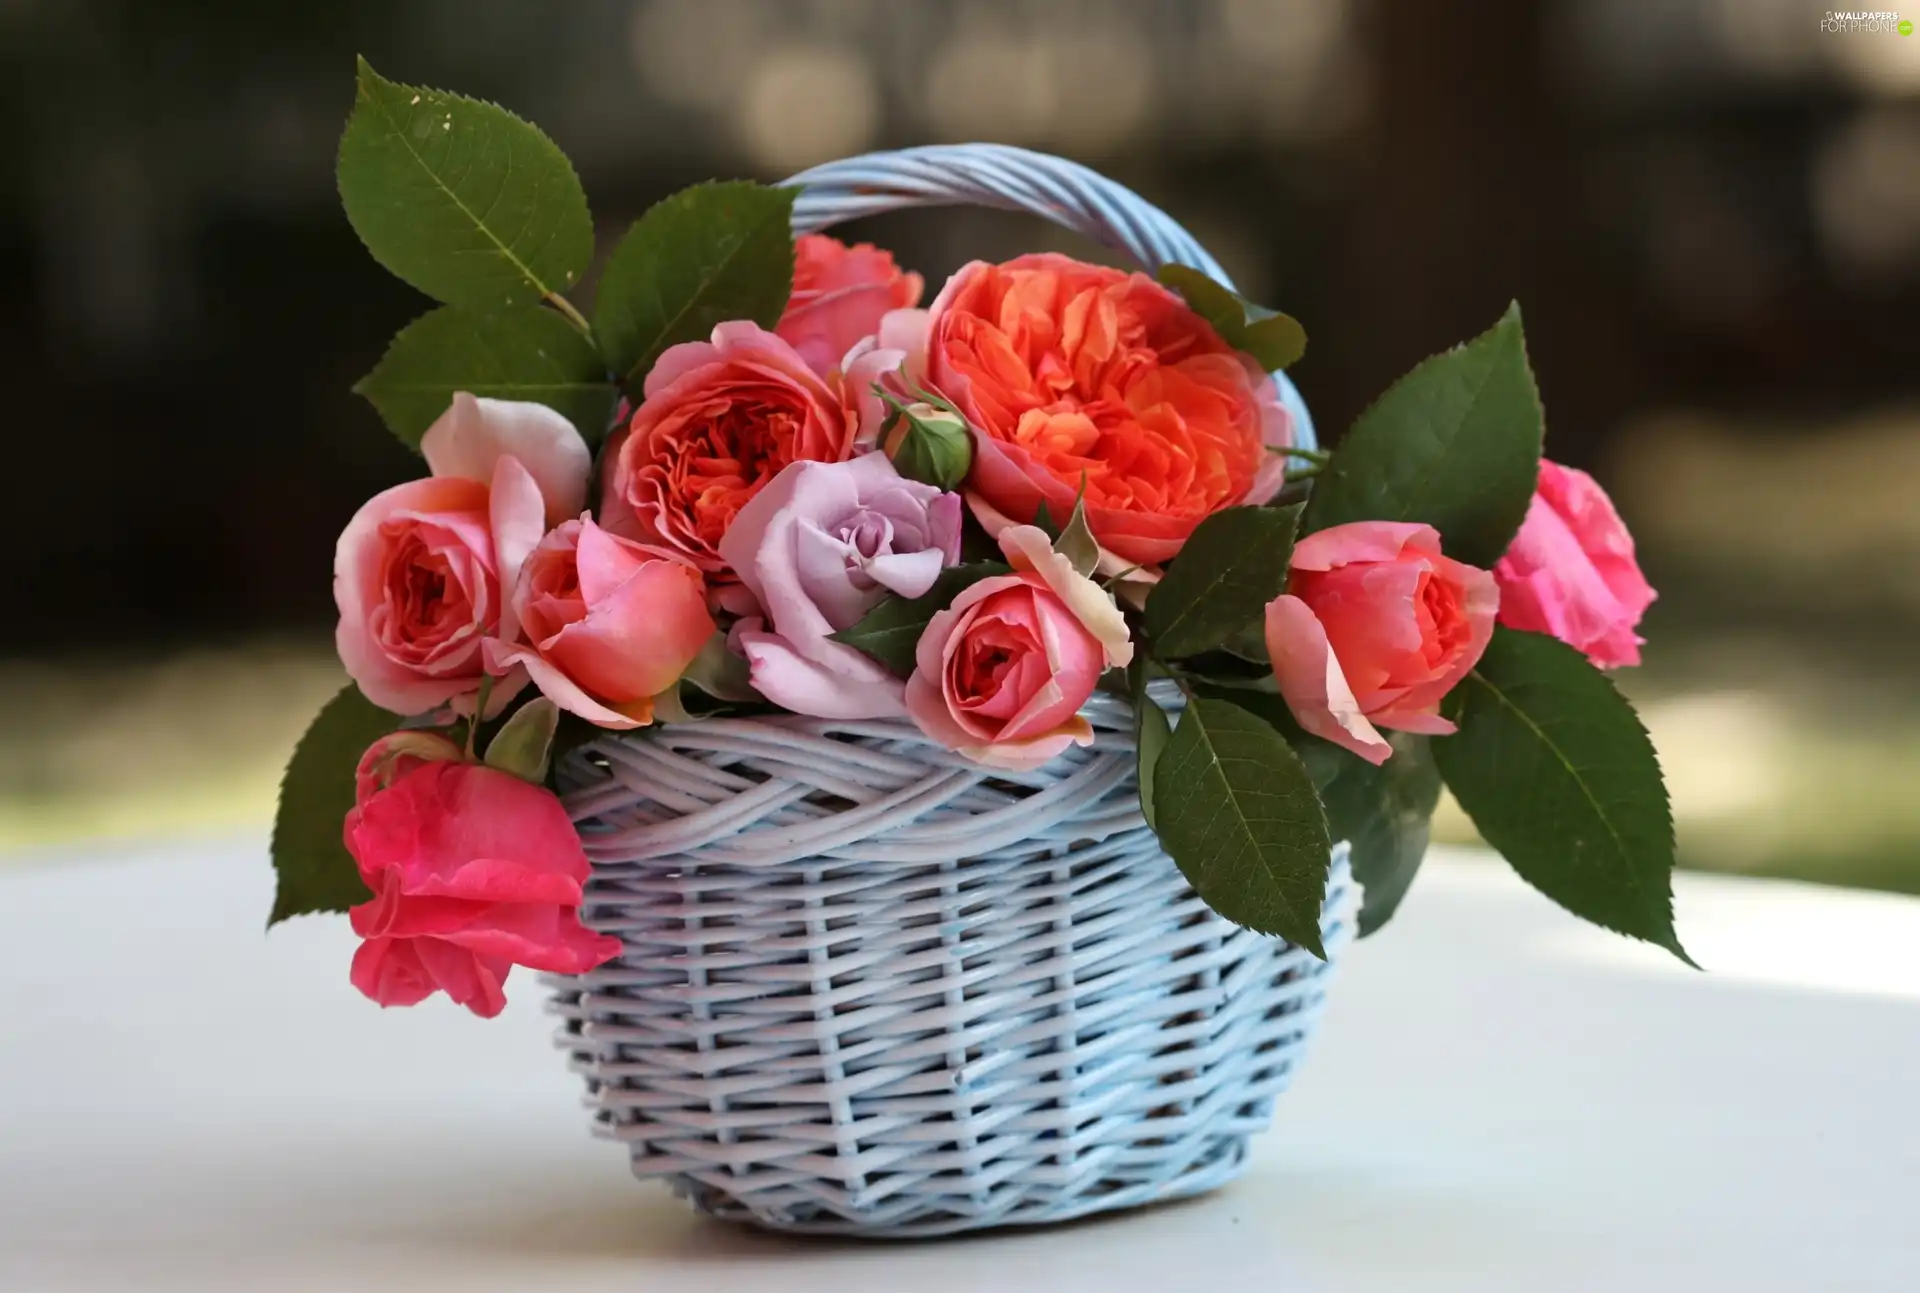 roses, basket